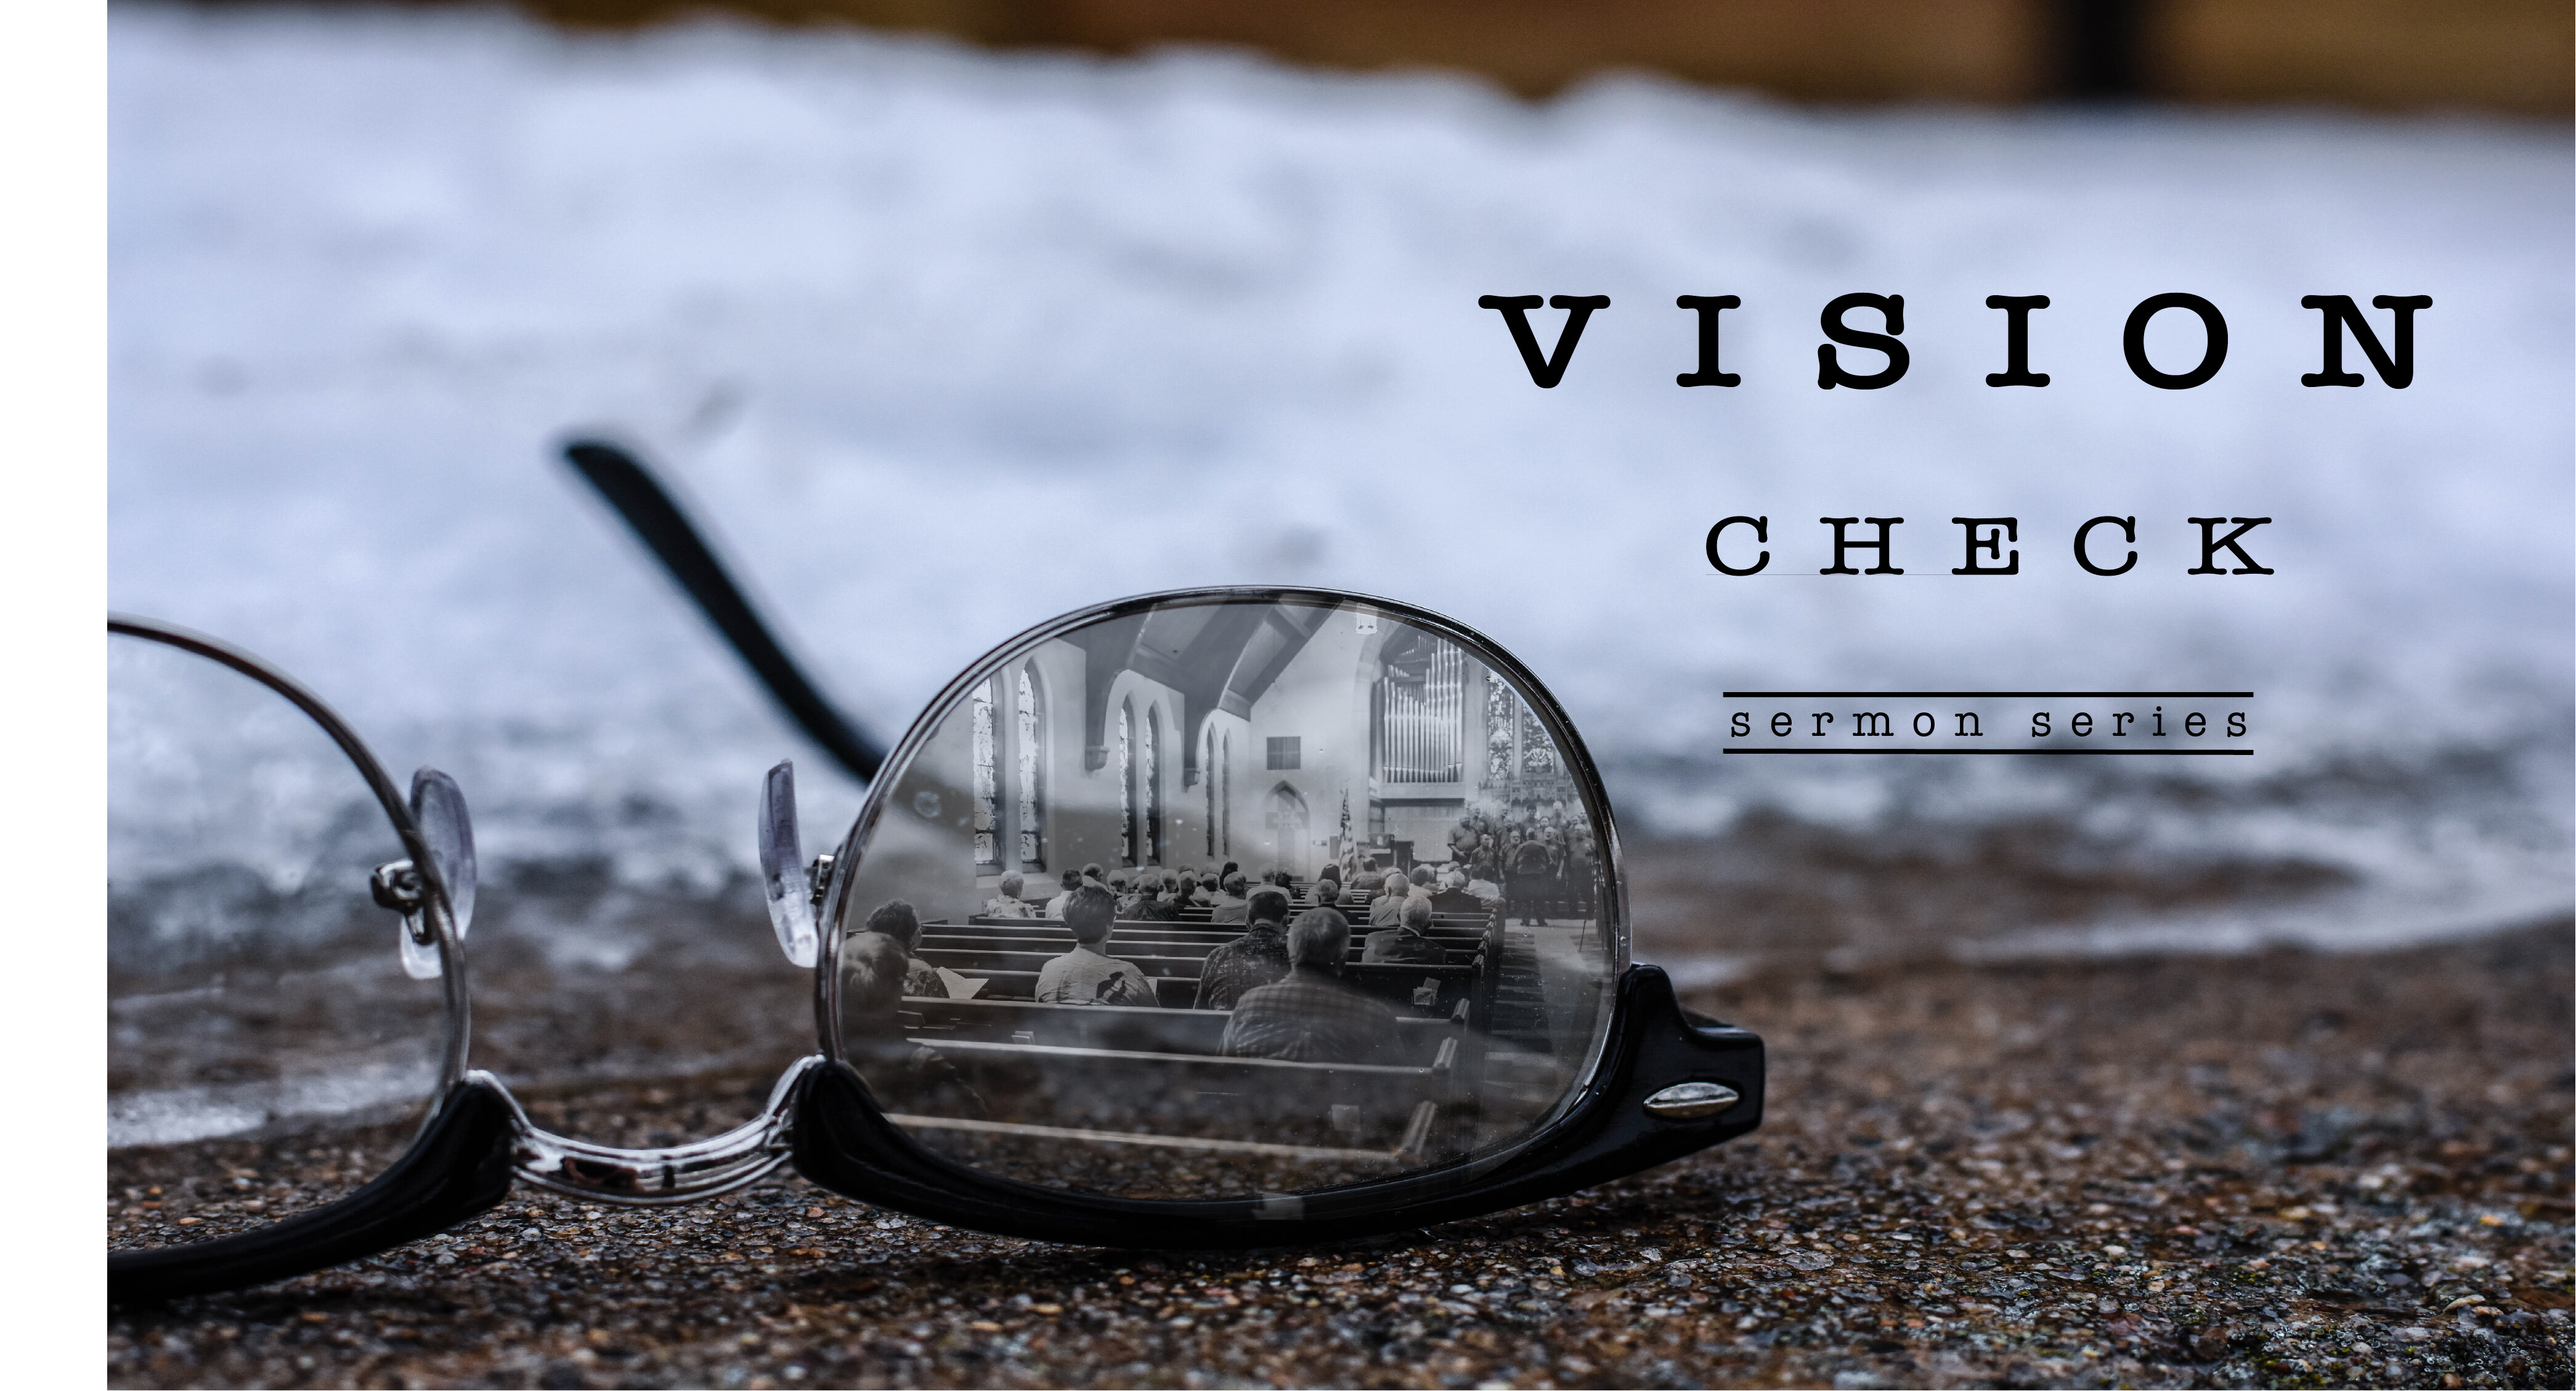 Vision Check